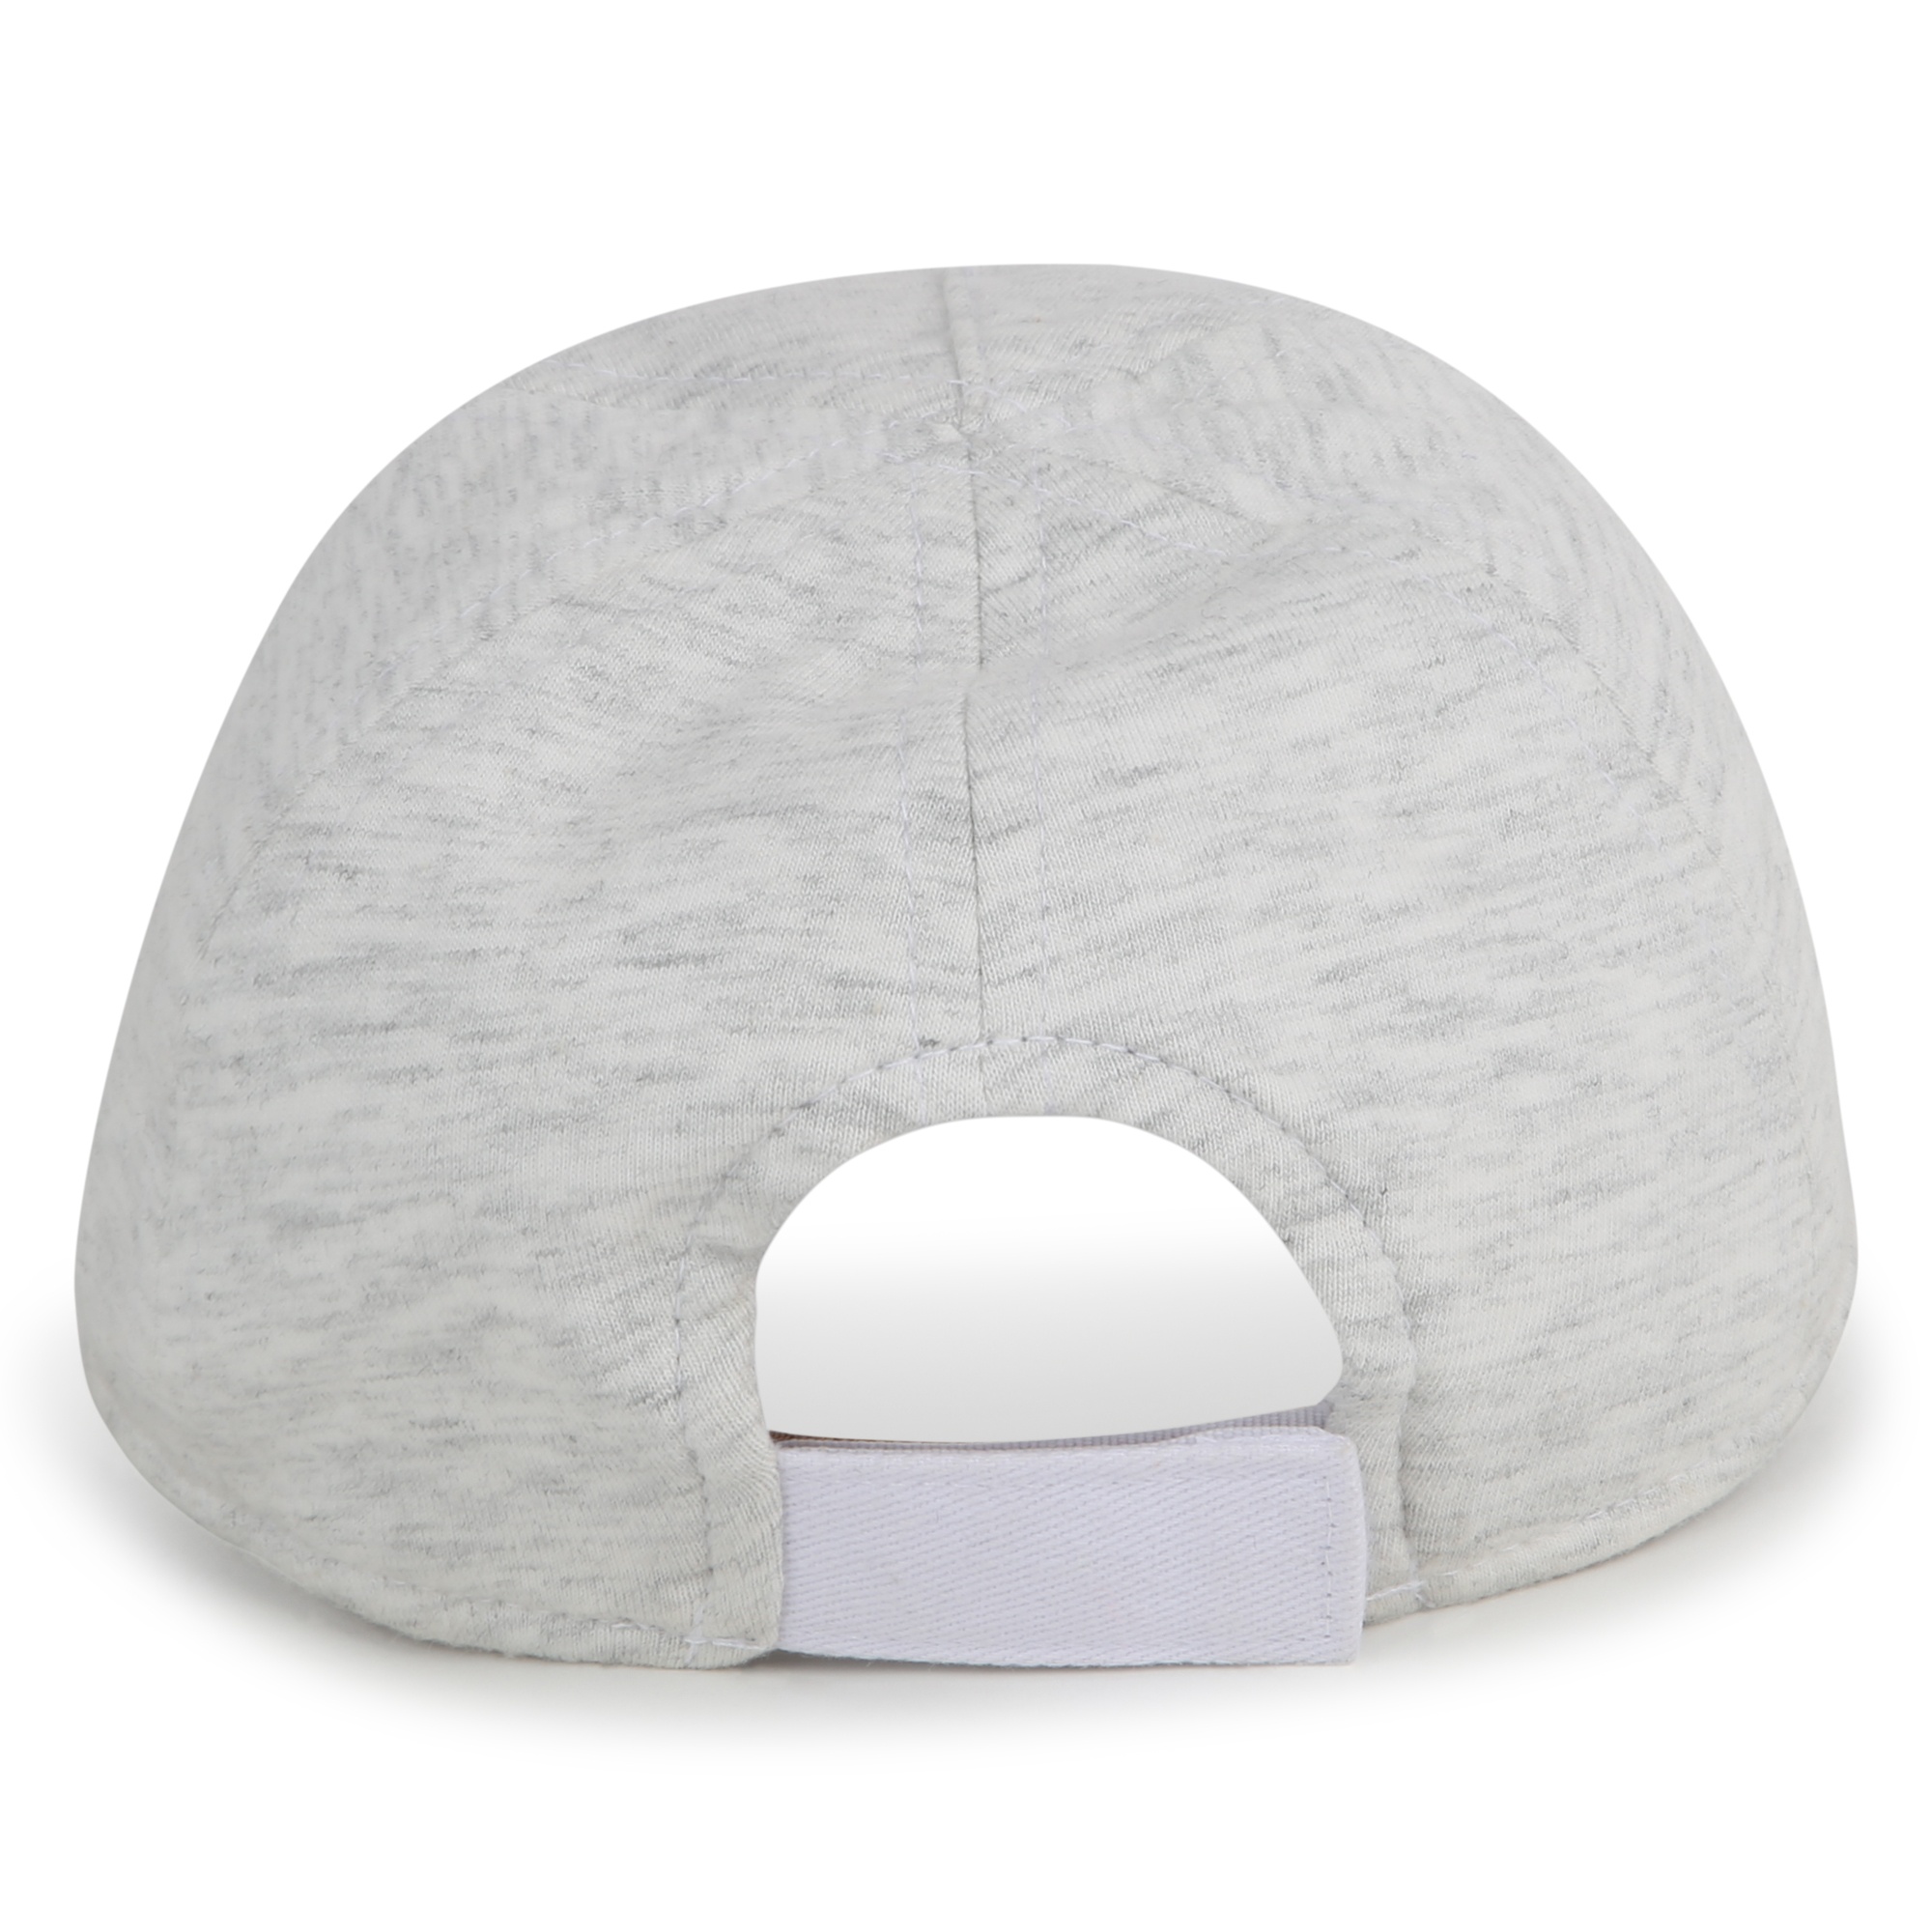 Reversible bi-material cap BOSS for BOY